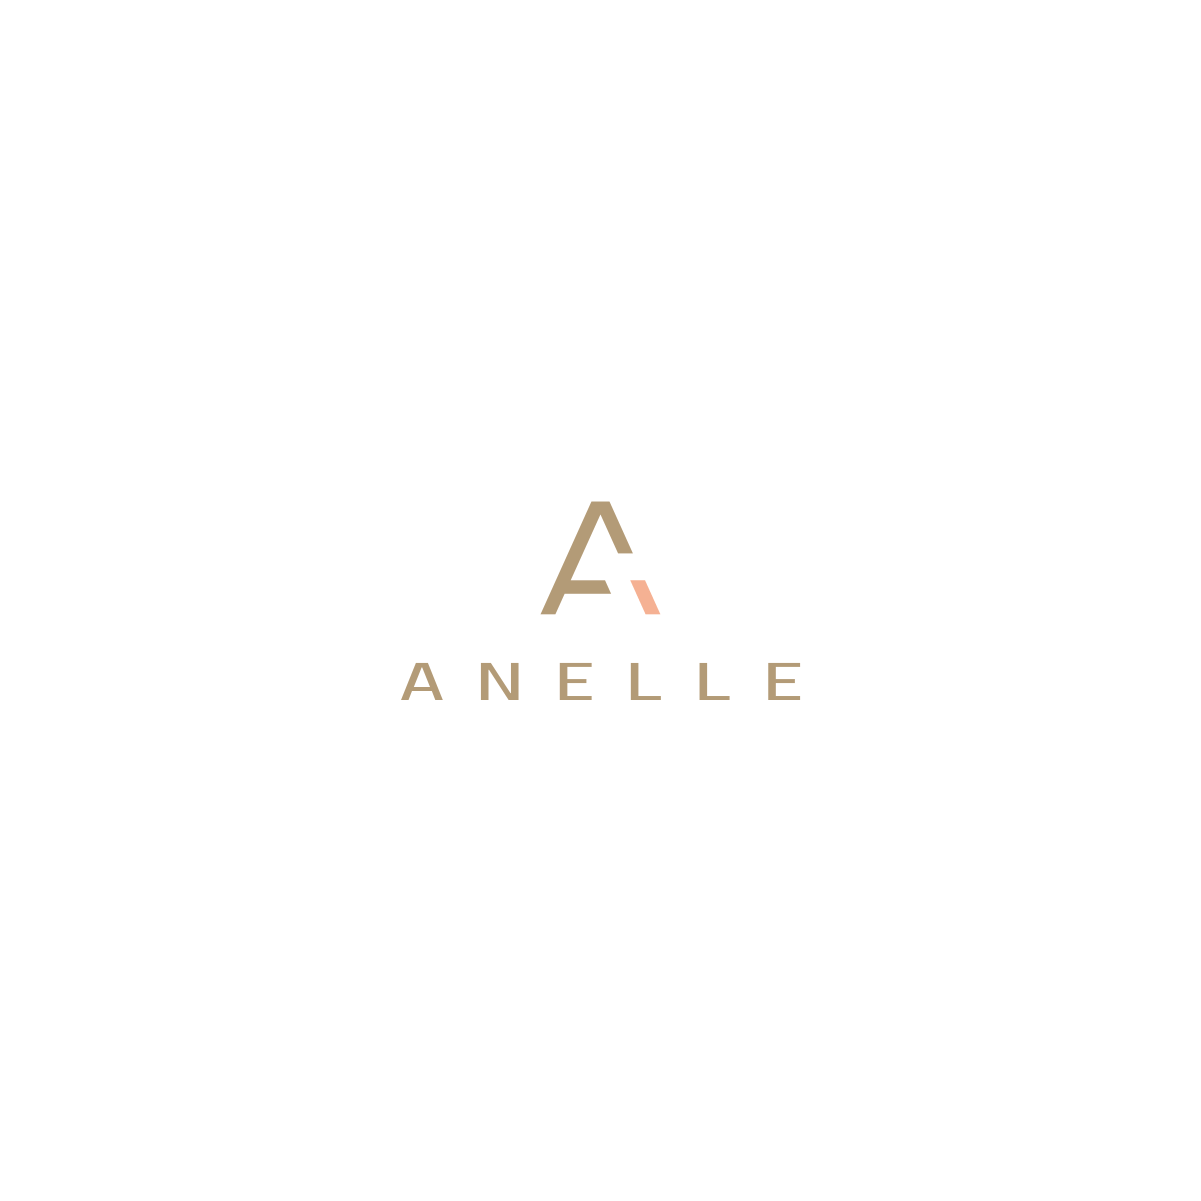 Gree Logo - Upmarket, Modern, Business Logo Design for Anelle by Gree™. Design